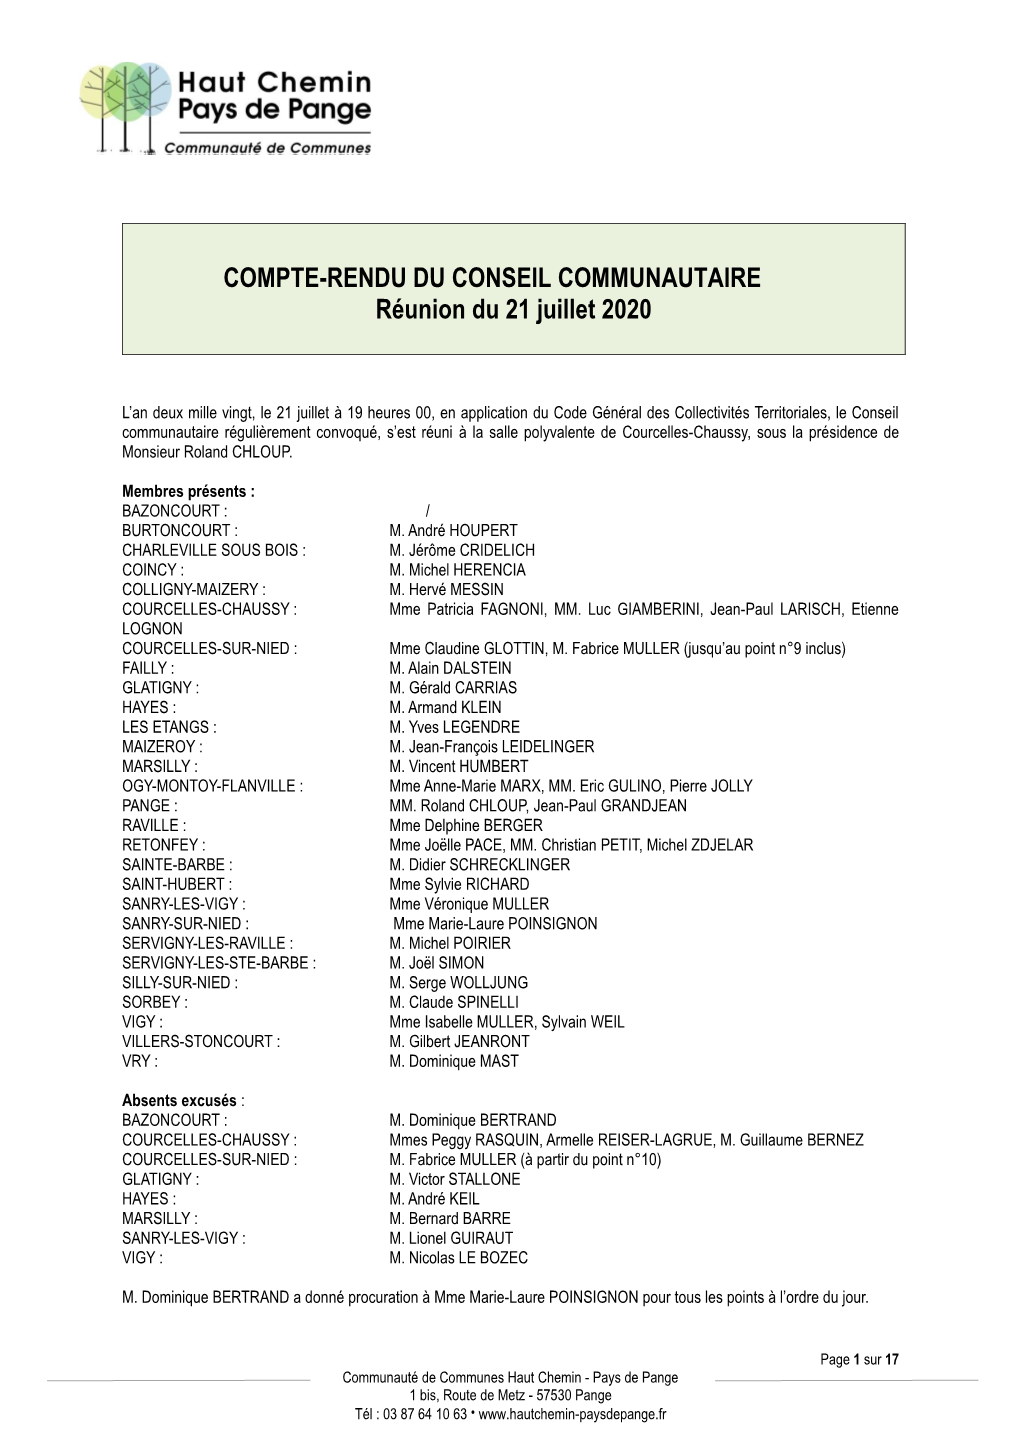 COMPTE-RENDU DU CONSEIL COMMUNAUTAIRE Réunion Du 21 Juillet 2020